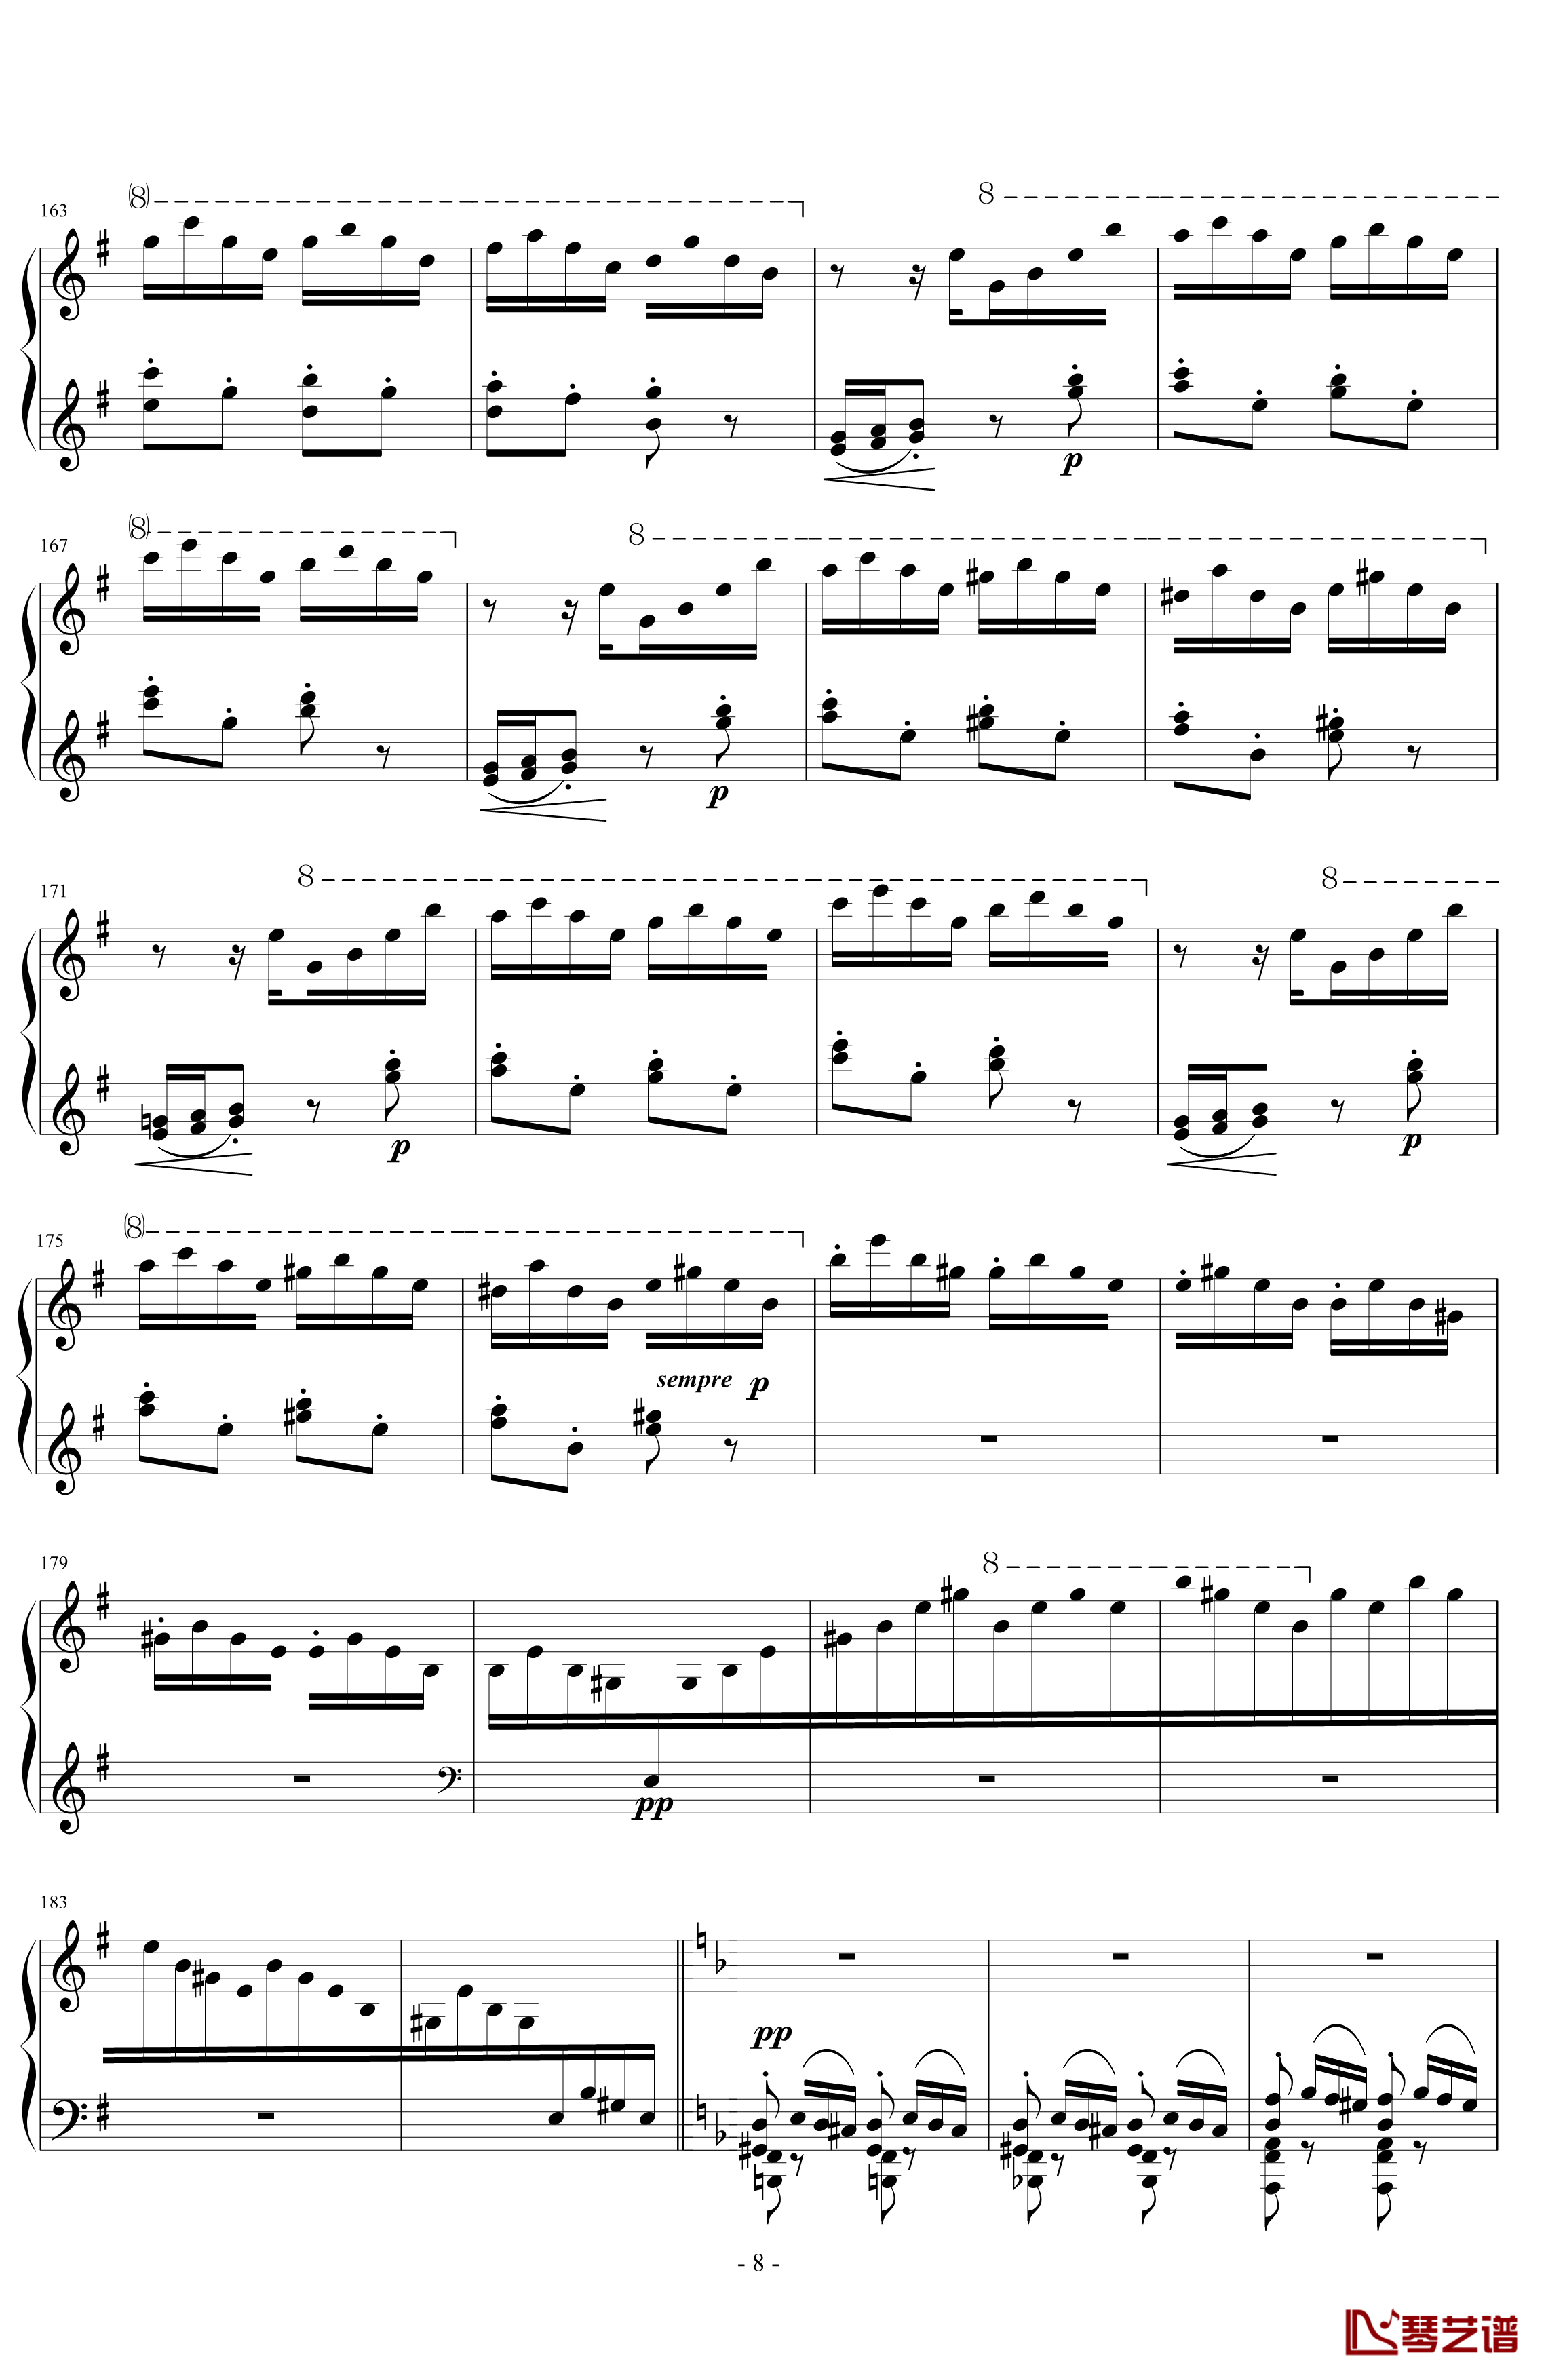 匈牙利狂想曲第7号钢琴谱-一首欢快活泼的舞曲-李斯特8